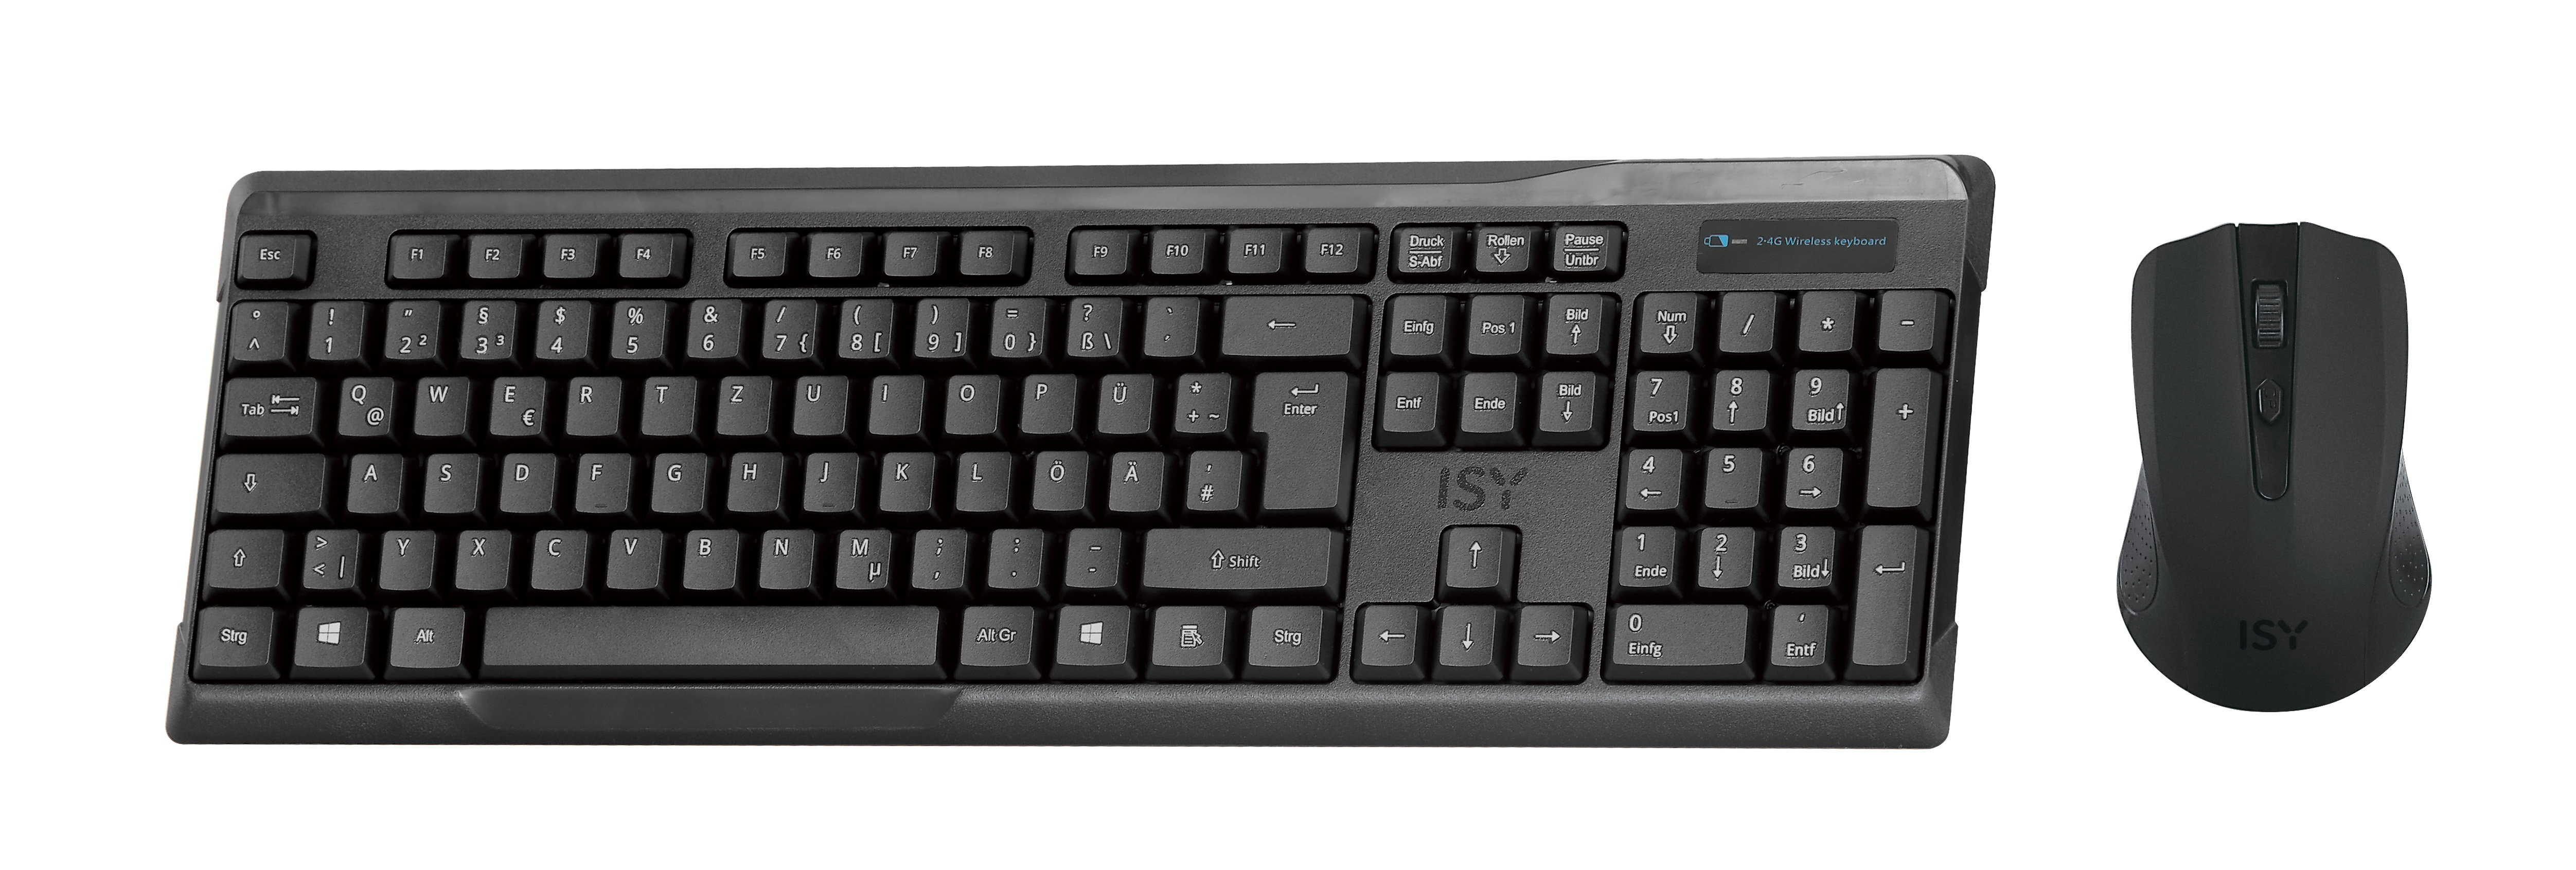 ISY IDE-2500, Maus Schwarz Tastatur & Set, kabellos